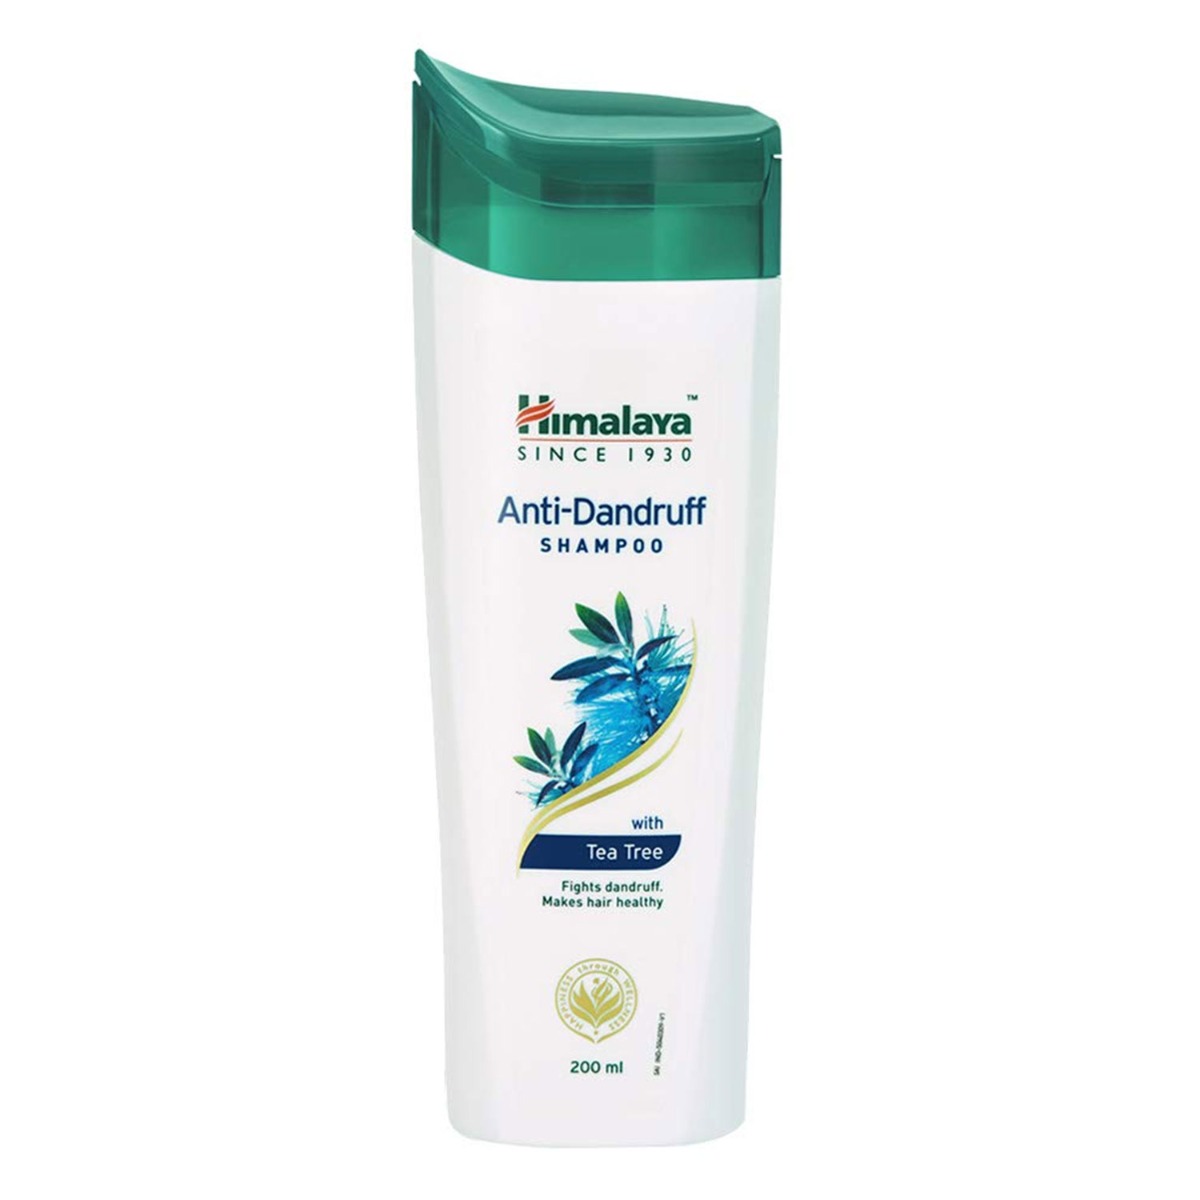 Himalaya Anti-Dandruff Shampoo, 200ml